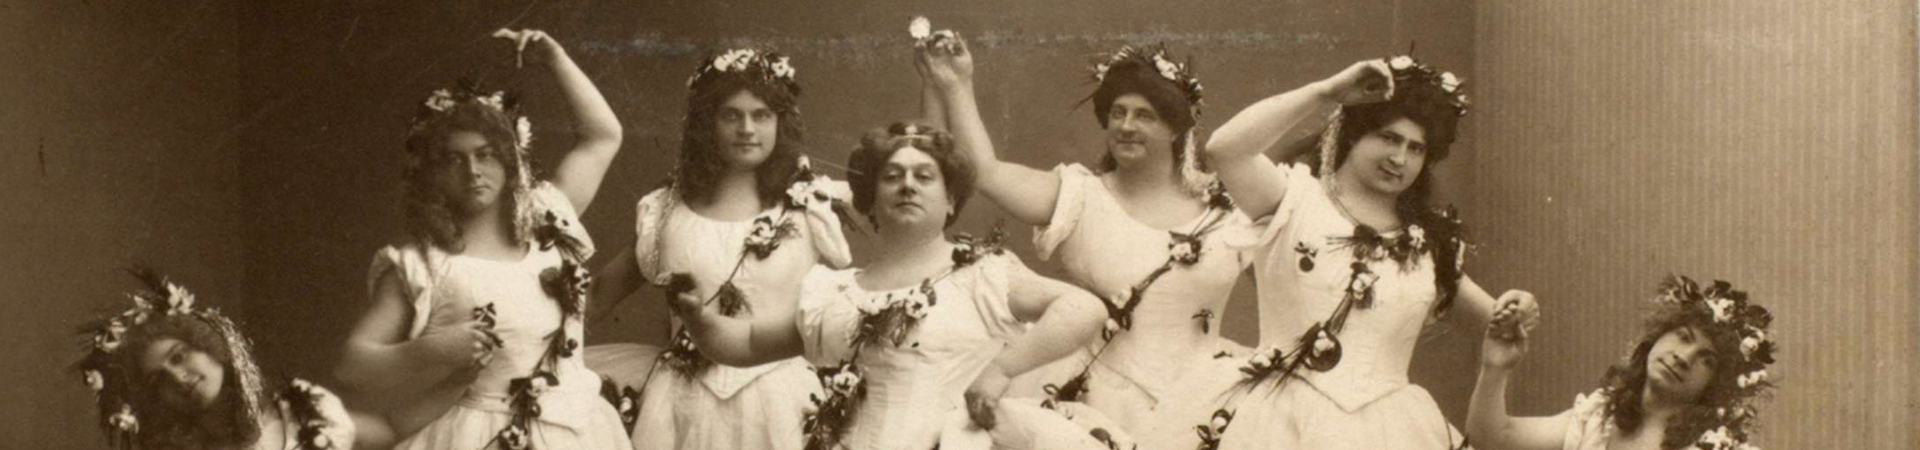 Der Feensee - Divertissementchen 1910/11 - Zillche-Ballett in Pose